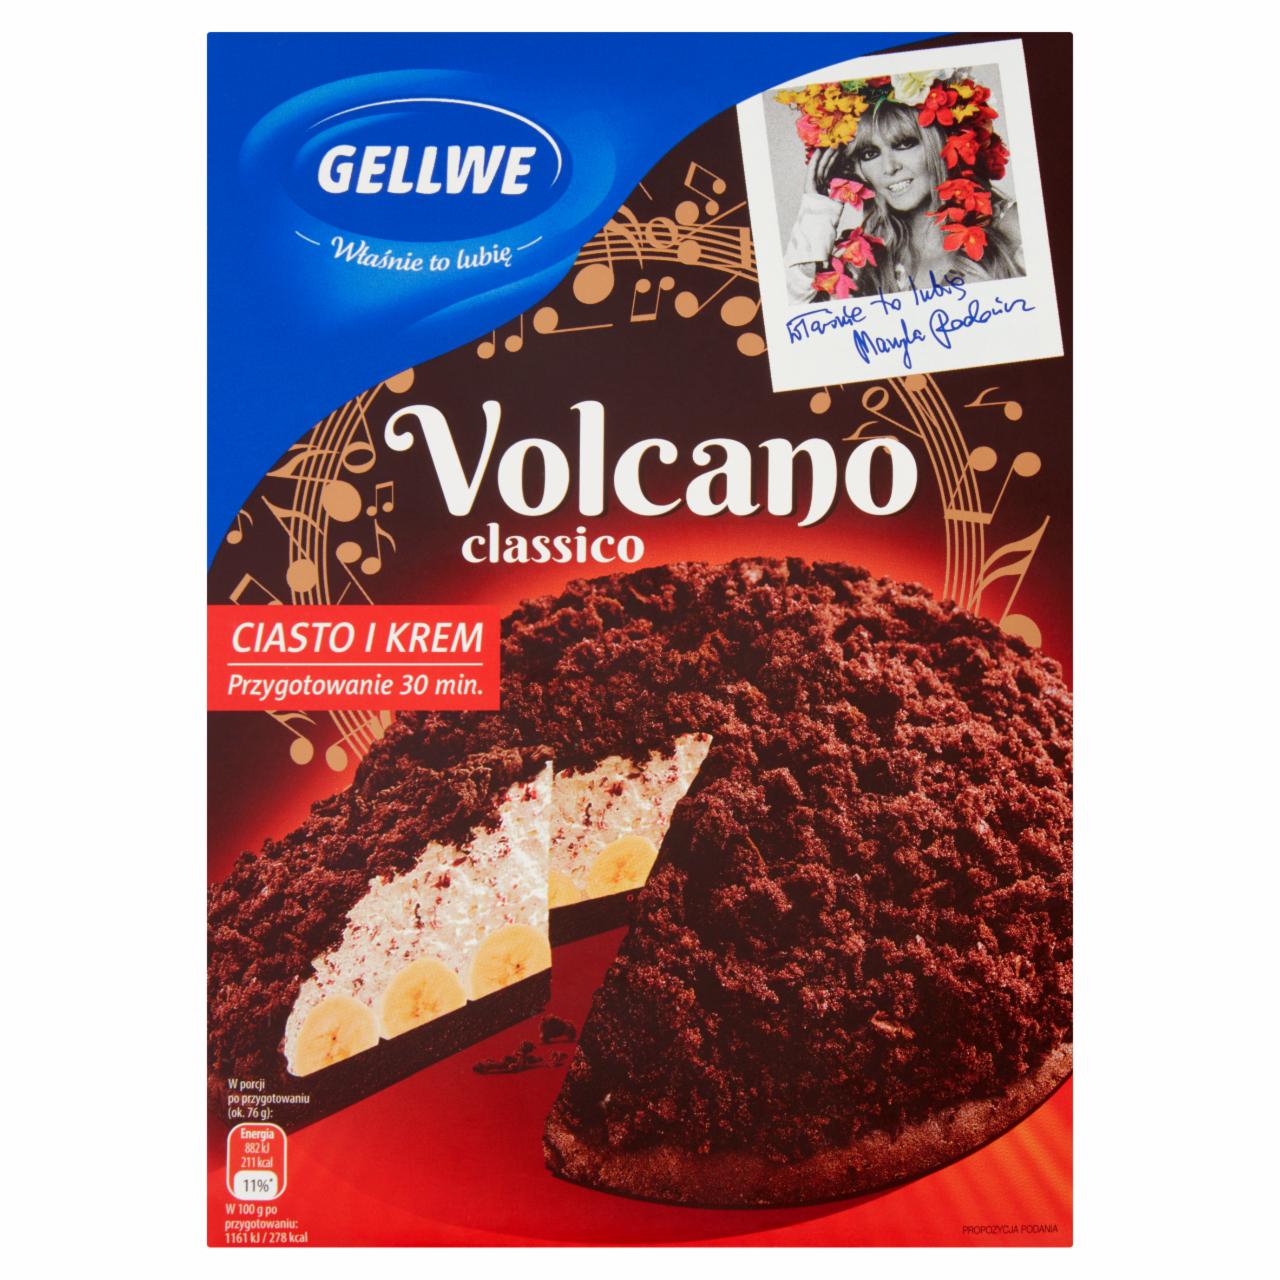 Zdjęcia - Gellwe Volcano classico Mieszanka do wypieku ciasta i przygotowania kremu 400 g